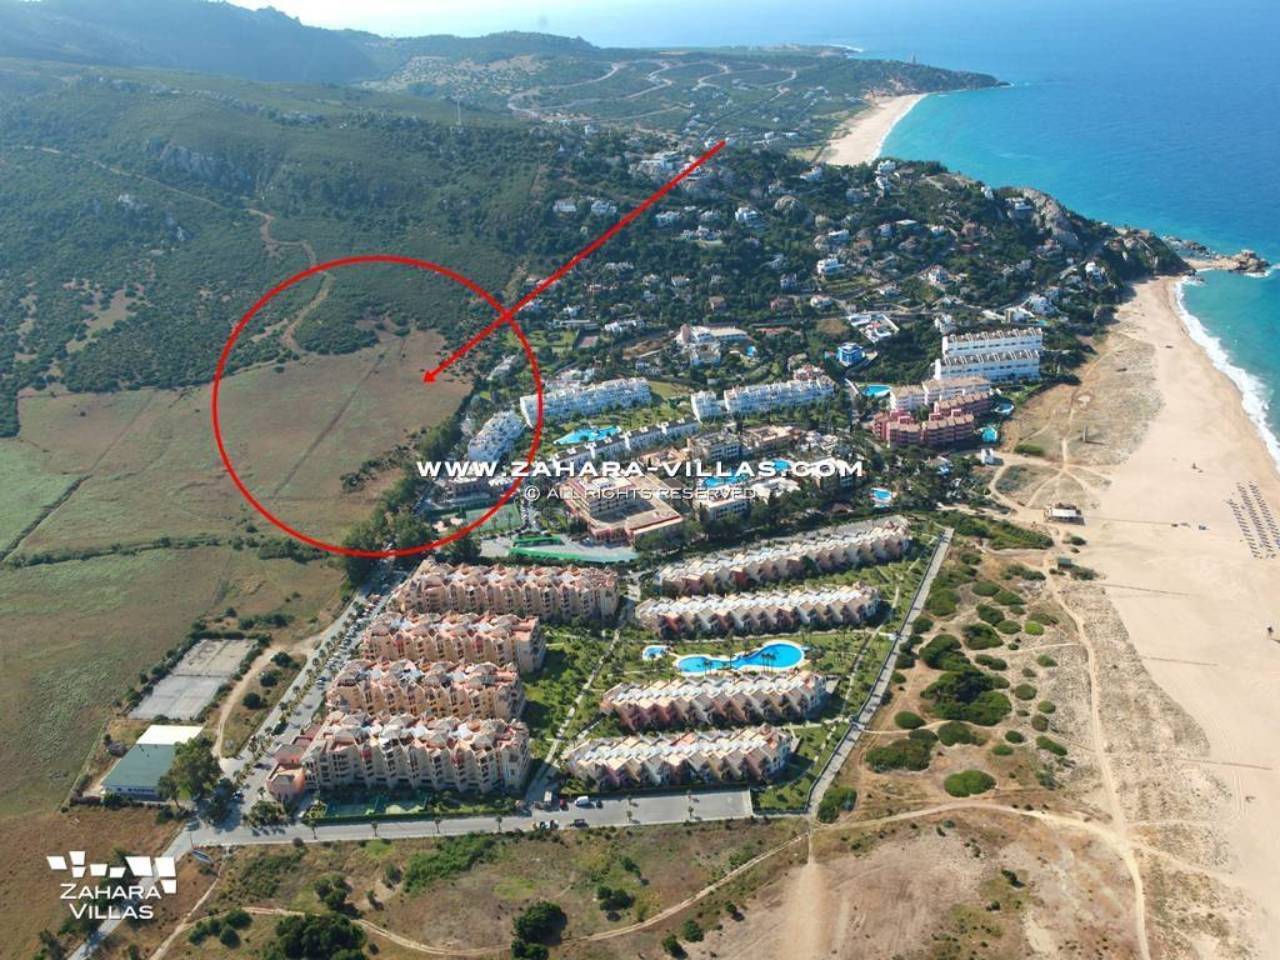 Imagen 2 de Grundstück in einem neuen Wohngebiet mit Blick auf das Meer und den zukünftigen Golfplatz